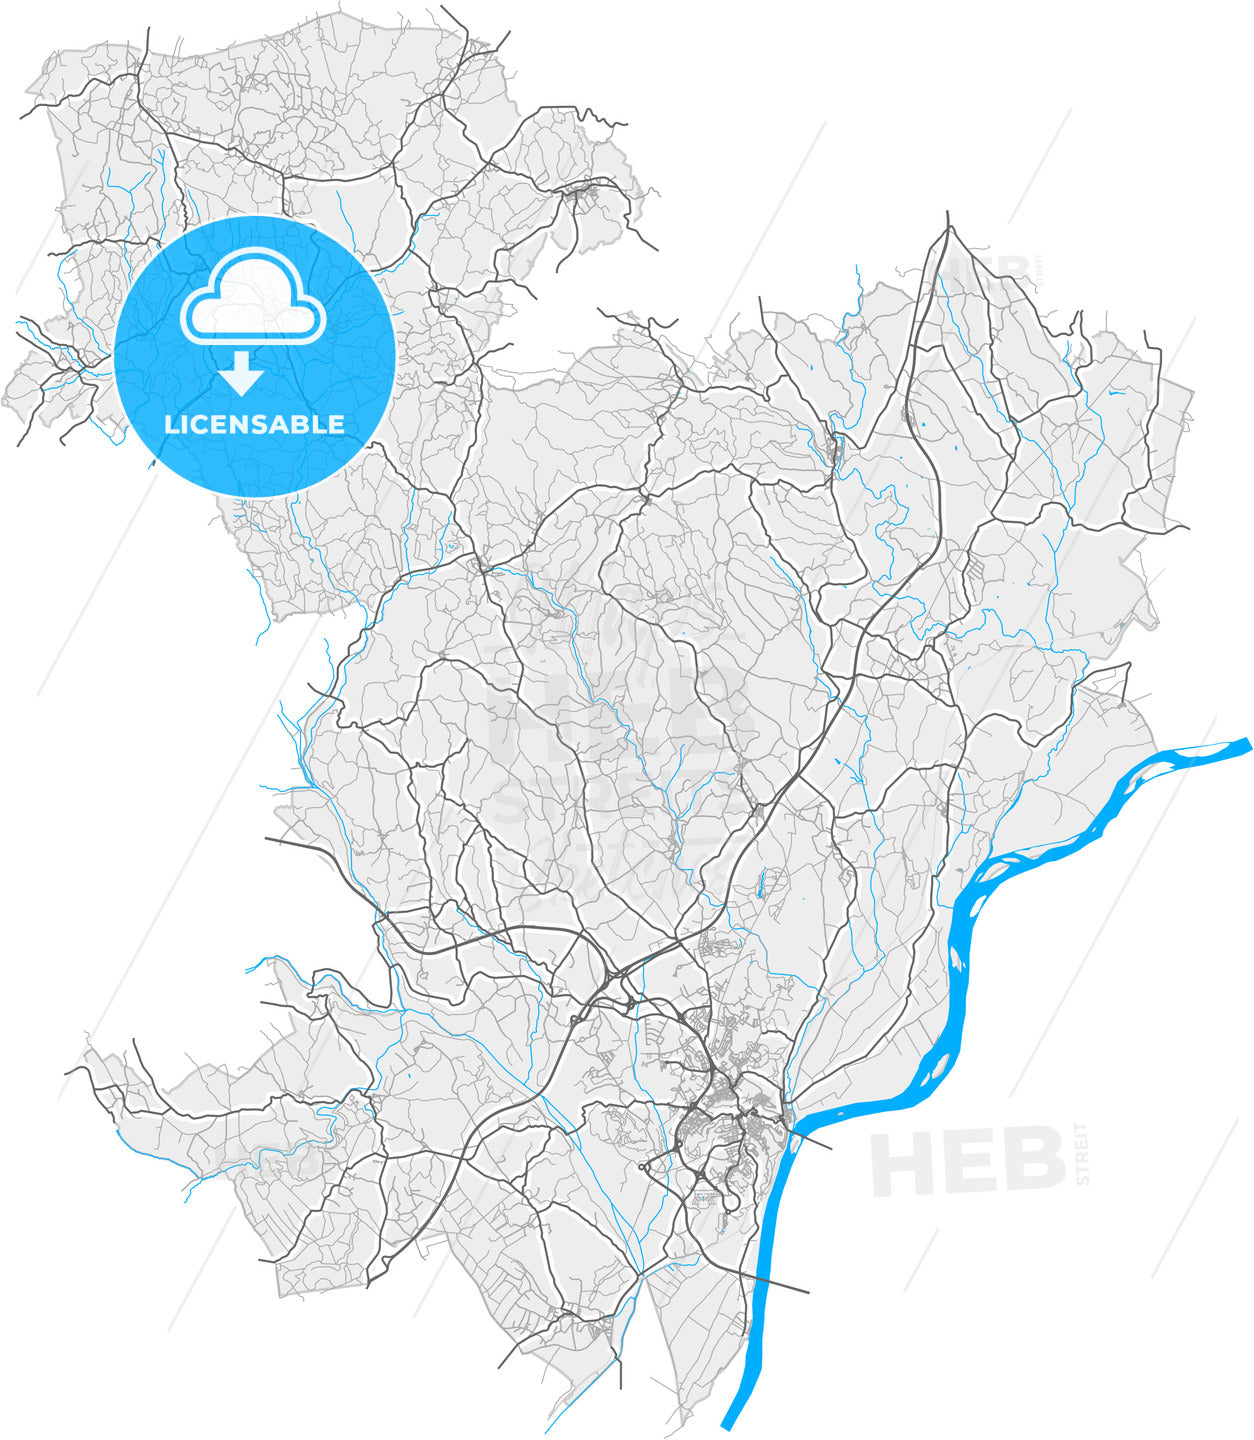 Santarém, Santarém, Portugal, high quality vector map